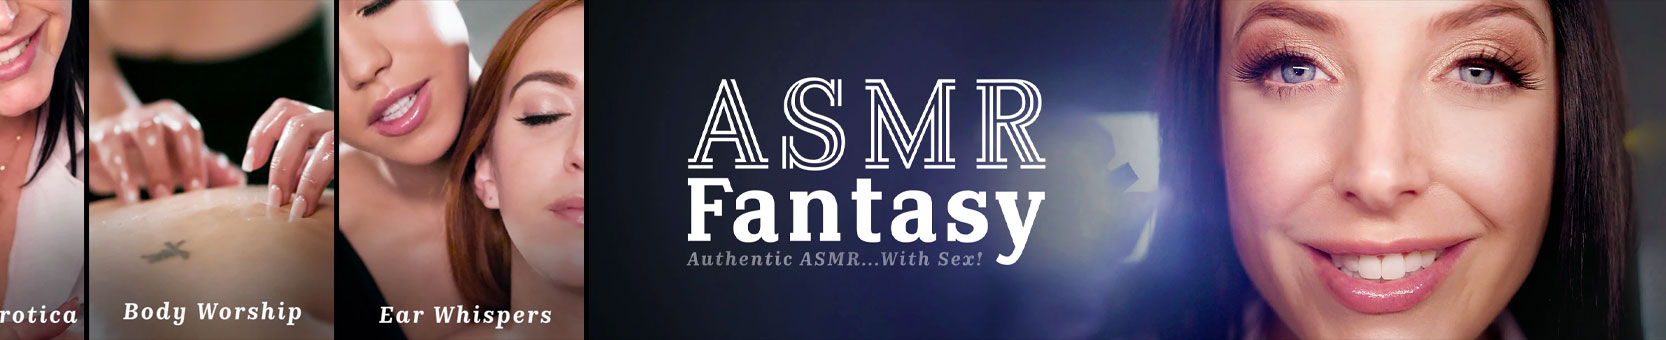 ASMR Fantasy videos gratis